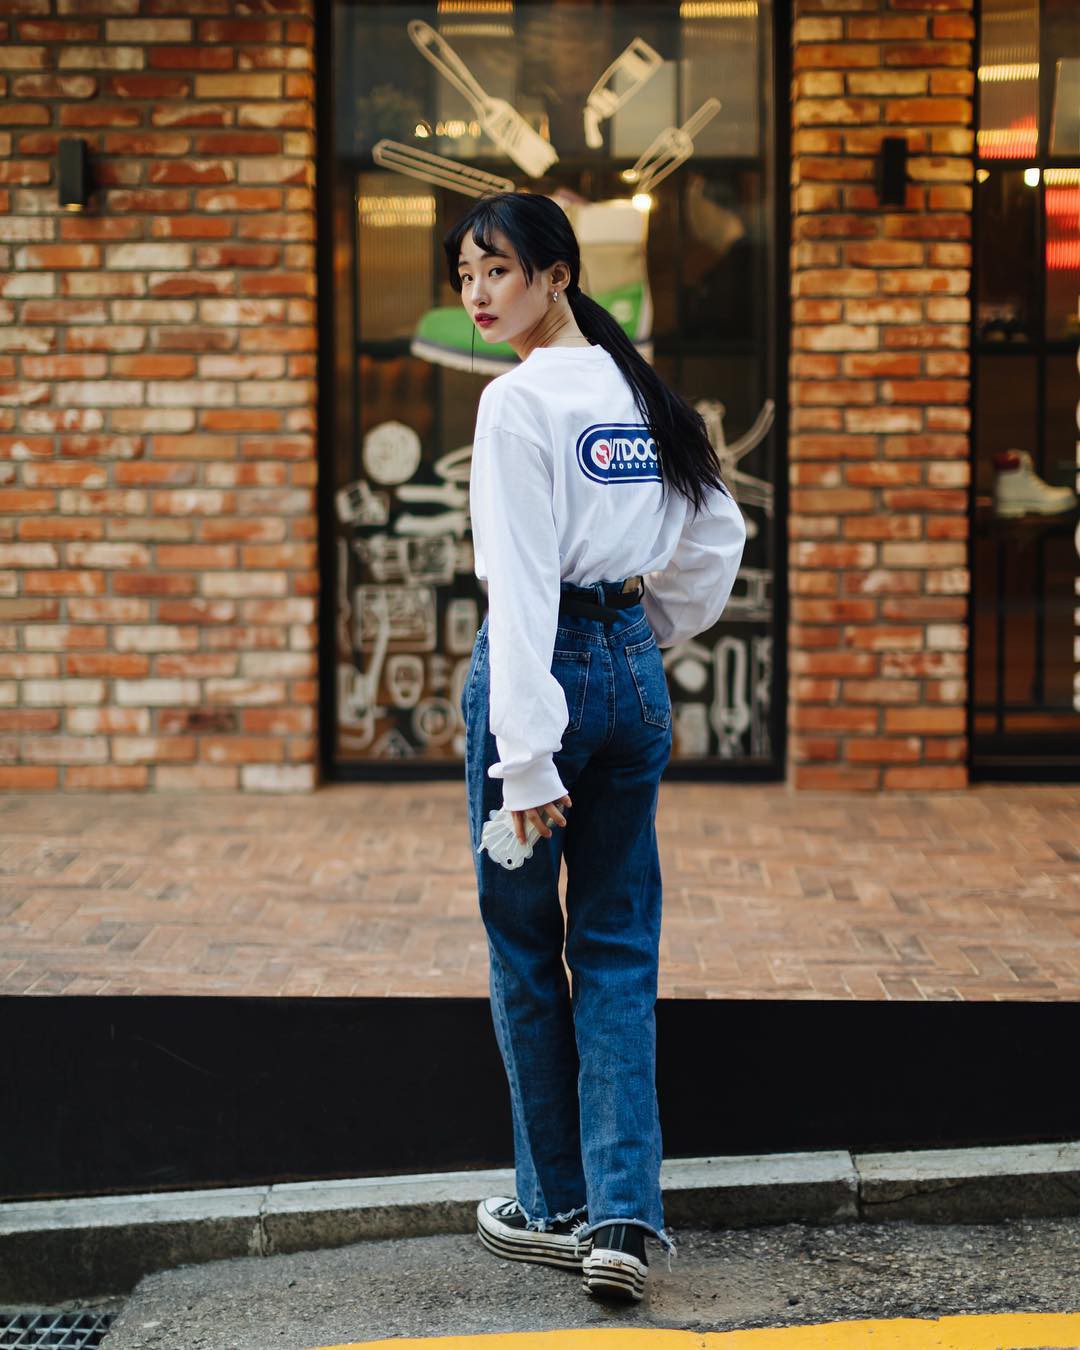 Street style không áo dạ, áo phao của giới trẻ Hàn tuần qua chính là gợi ý mix đồ tuyệt vời cho mùa đông không lạnh tại Hà Nội lúc này - Ảnh 3.